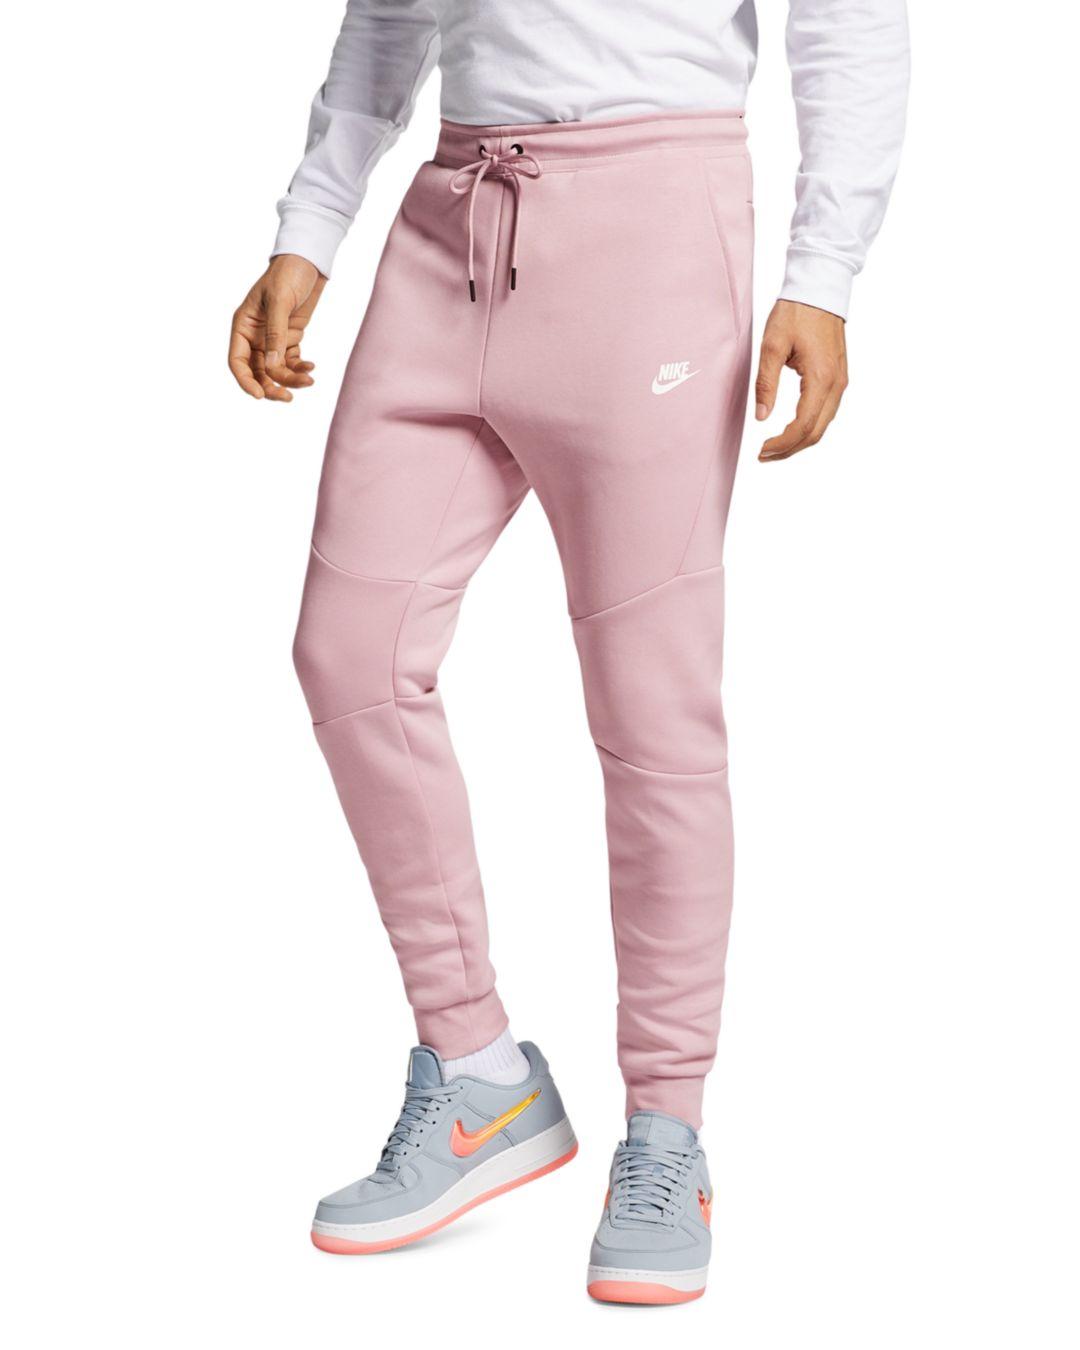 Nike Tech Fleece Jogger Pants In Pink For Men Lyst